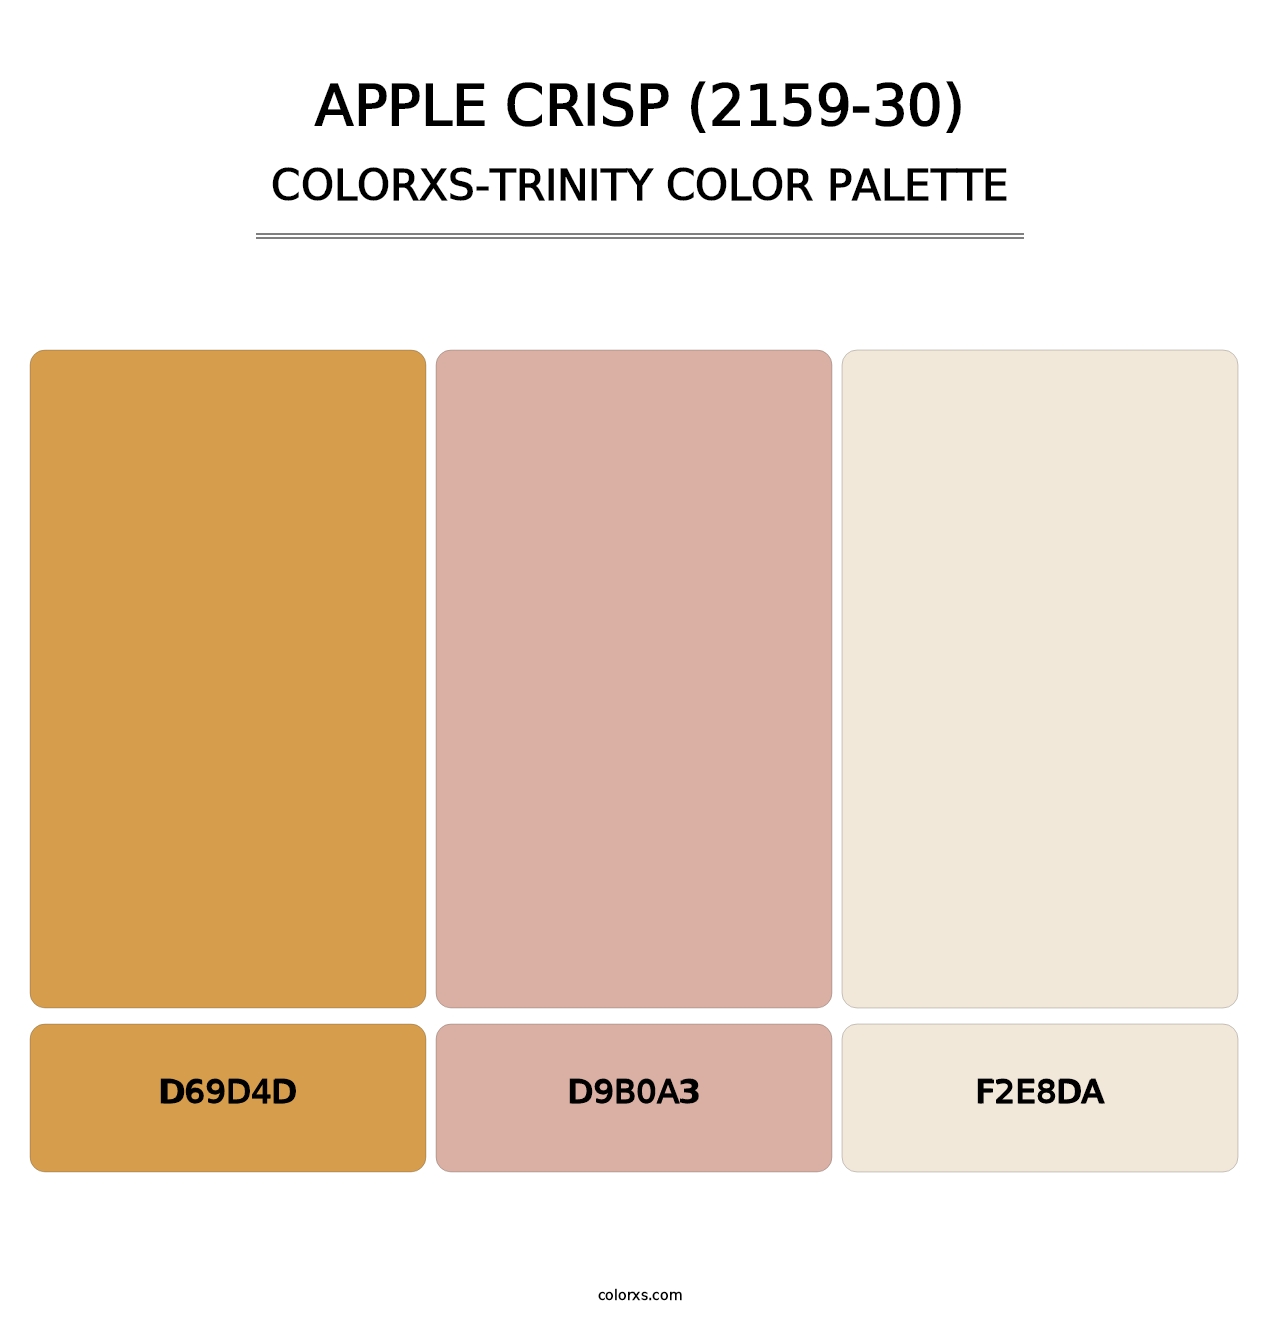 Apple Crisp (2159-30) - Colorxs Trinity Palette